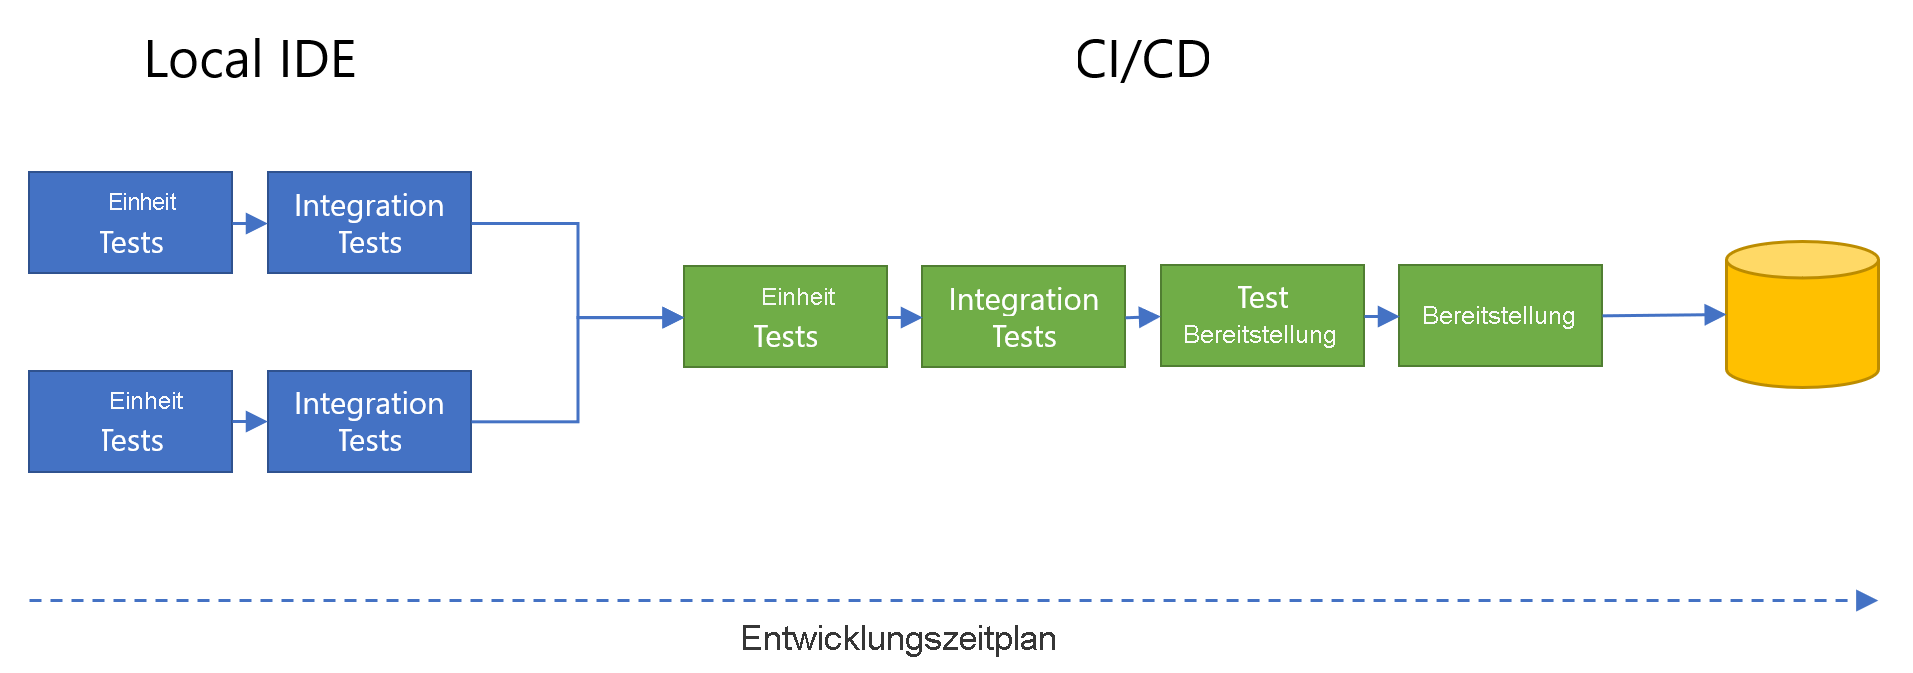 Diagramm: parallele Komponententests und Integrationstests in lokalen IDEs, Zusammenführung in CI/CD-Entwicklungsflow mit Komponententests, Integrationstests, Testbereitstellung und endgültiger Bereitstellung